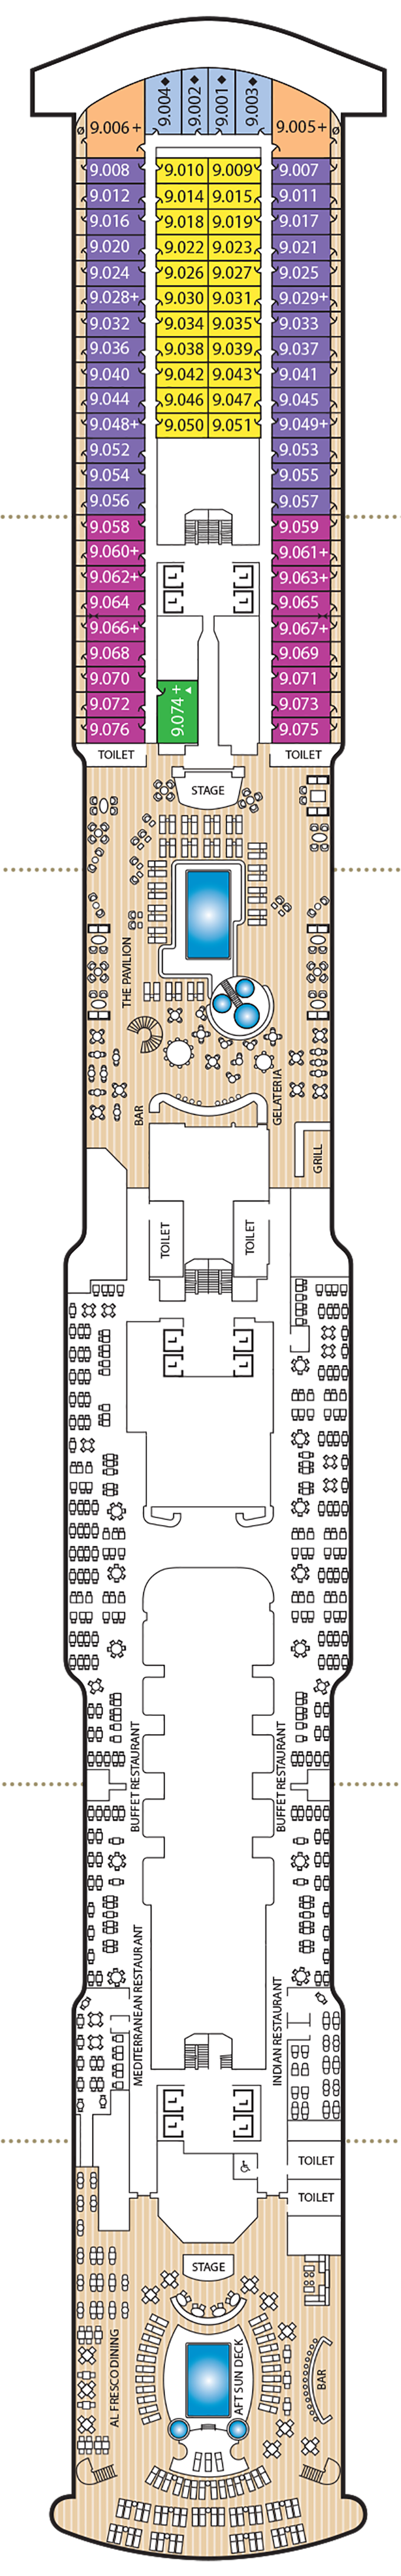 Queen Anne - Decksplan Deck 9